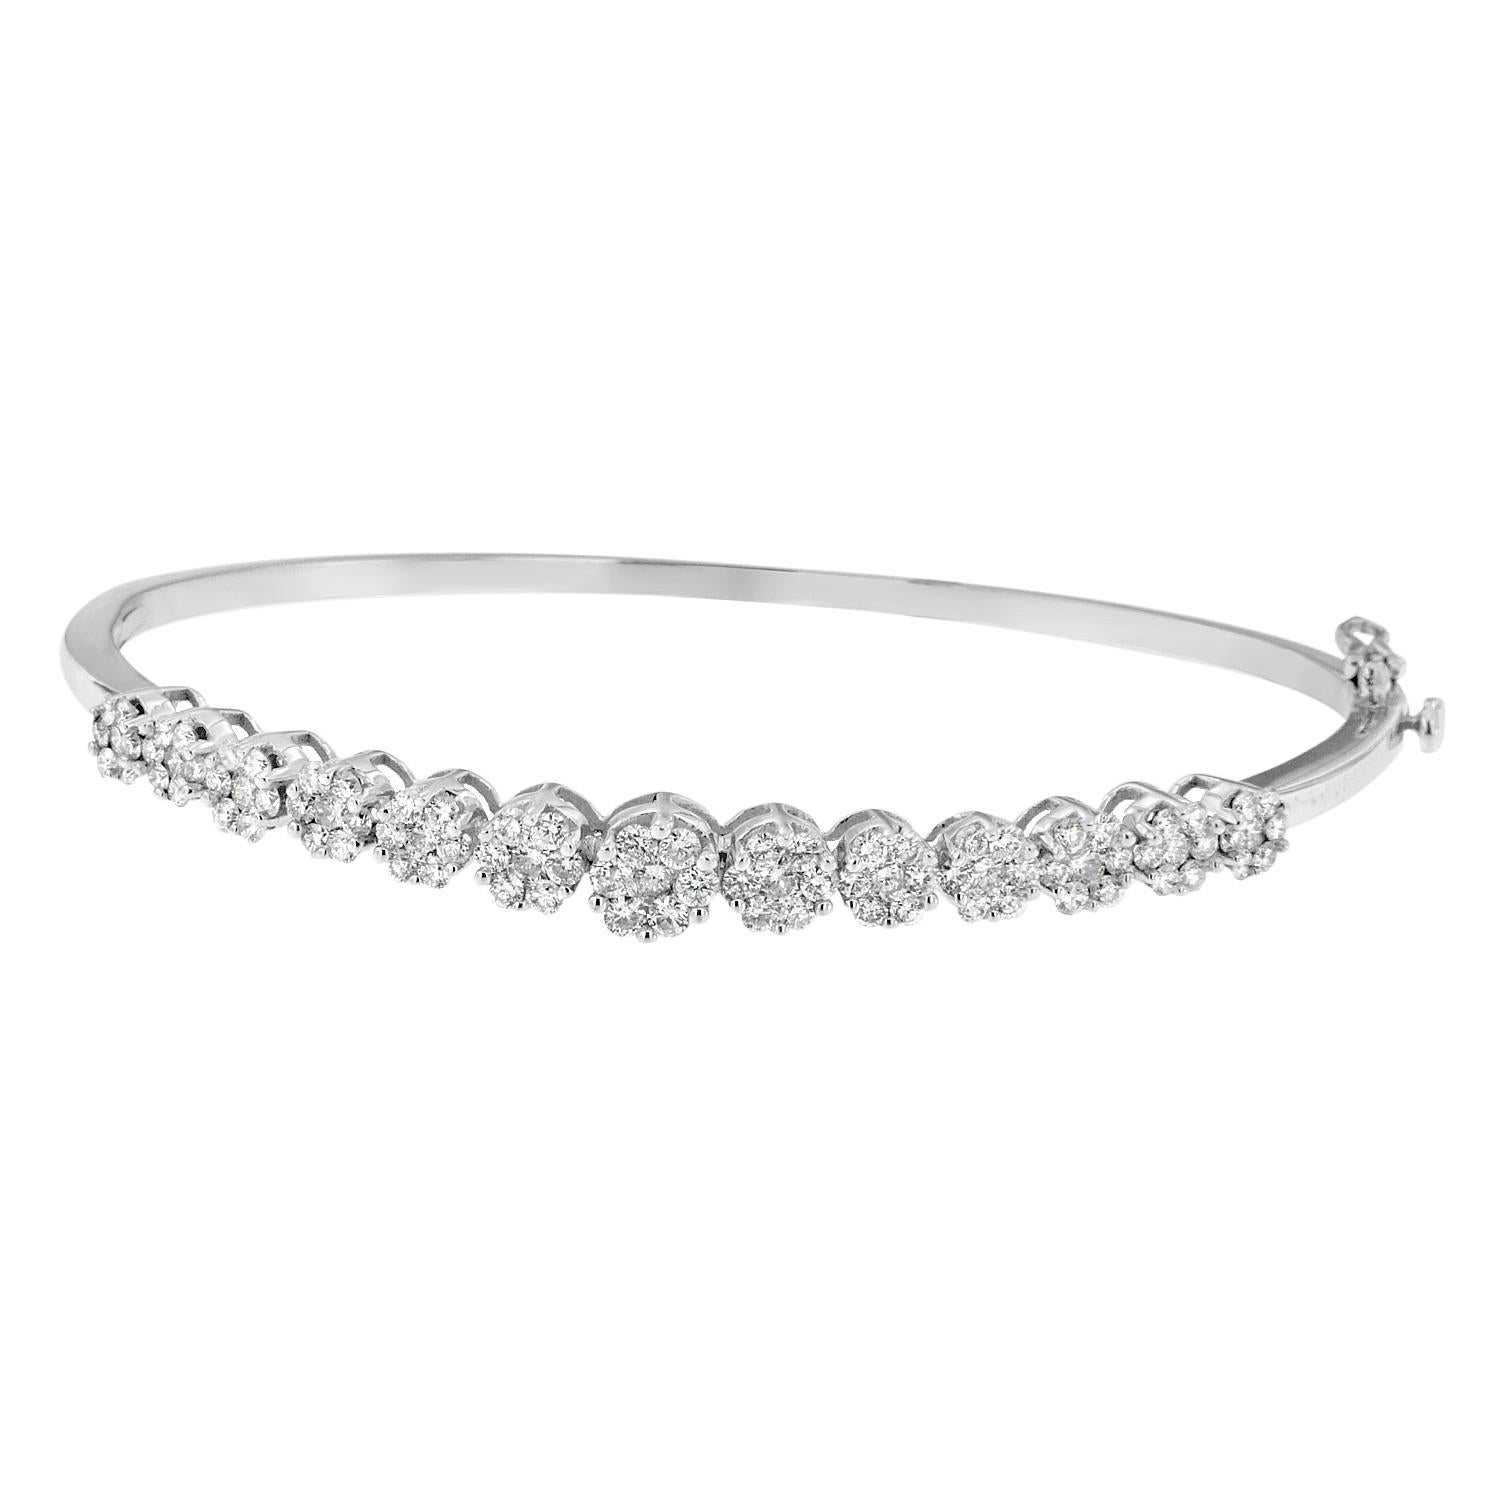 Schenken Sie ihr ein Flair für Blumen mit diesem schlichten, aber wunderschönen Armband. Klassische Diamanten im Rundschliff bilden wunderschöne Bouquets